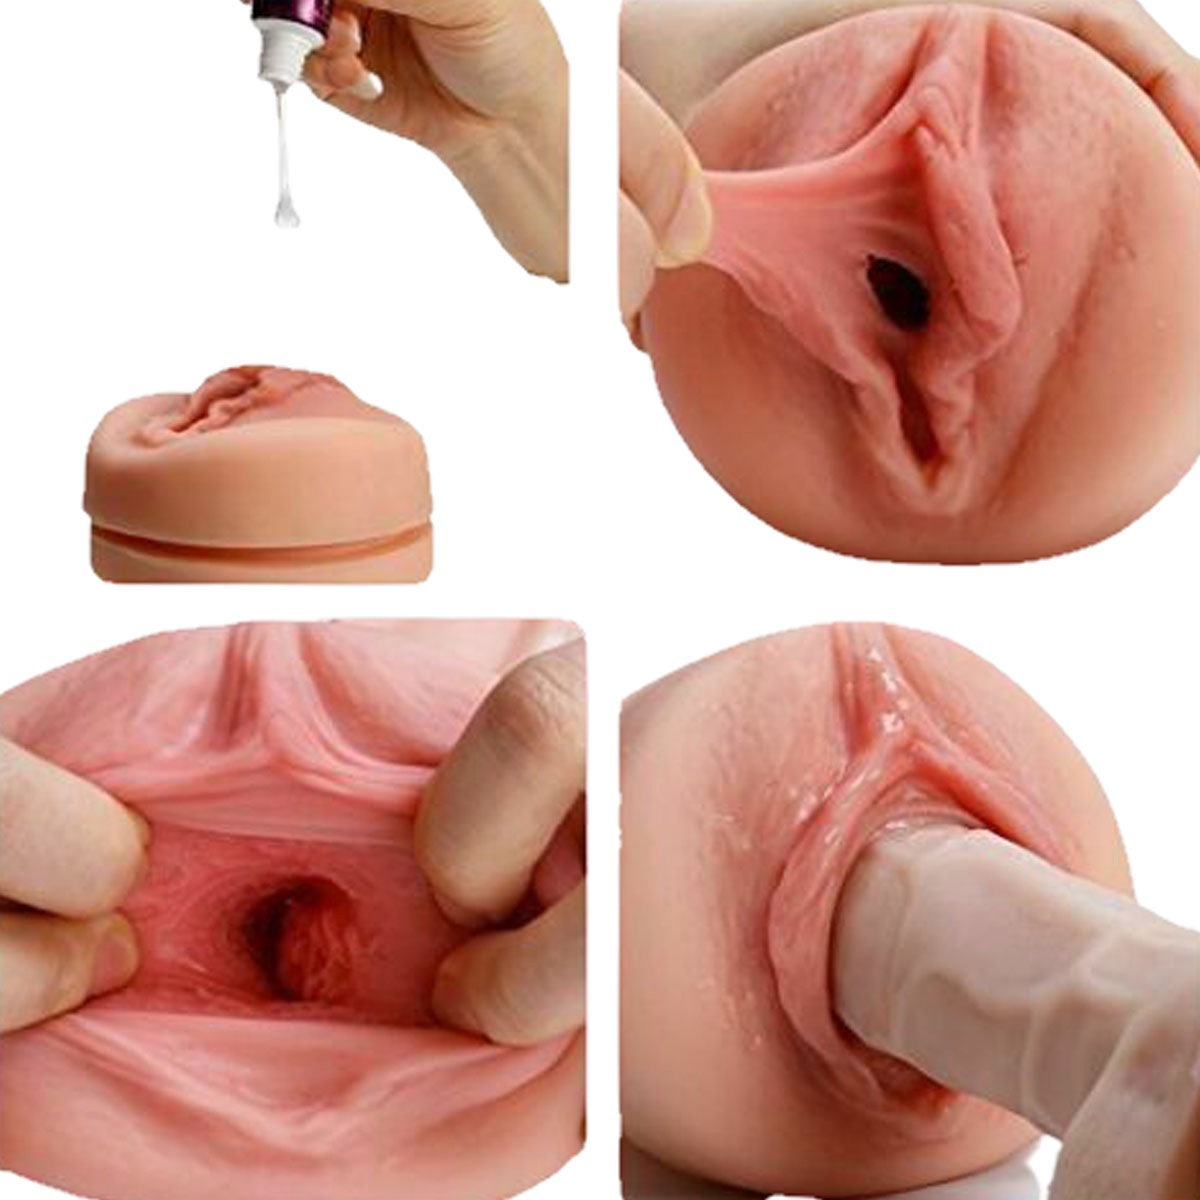 вагина искусственная мастурбация фото 7